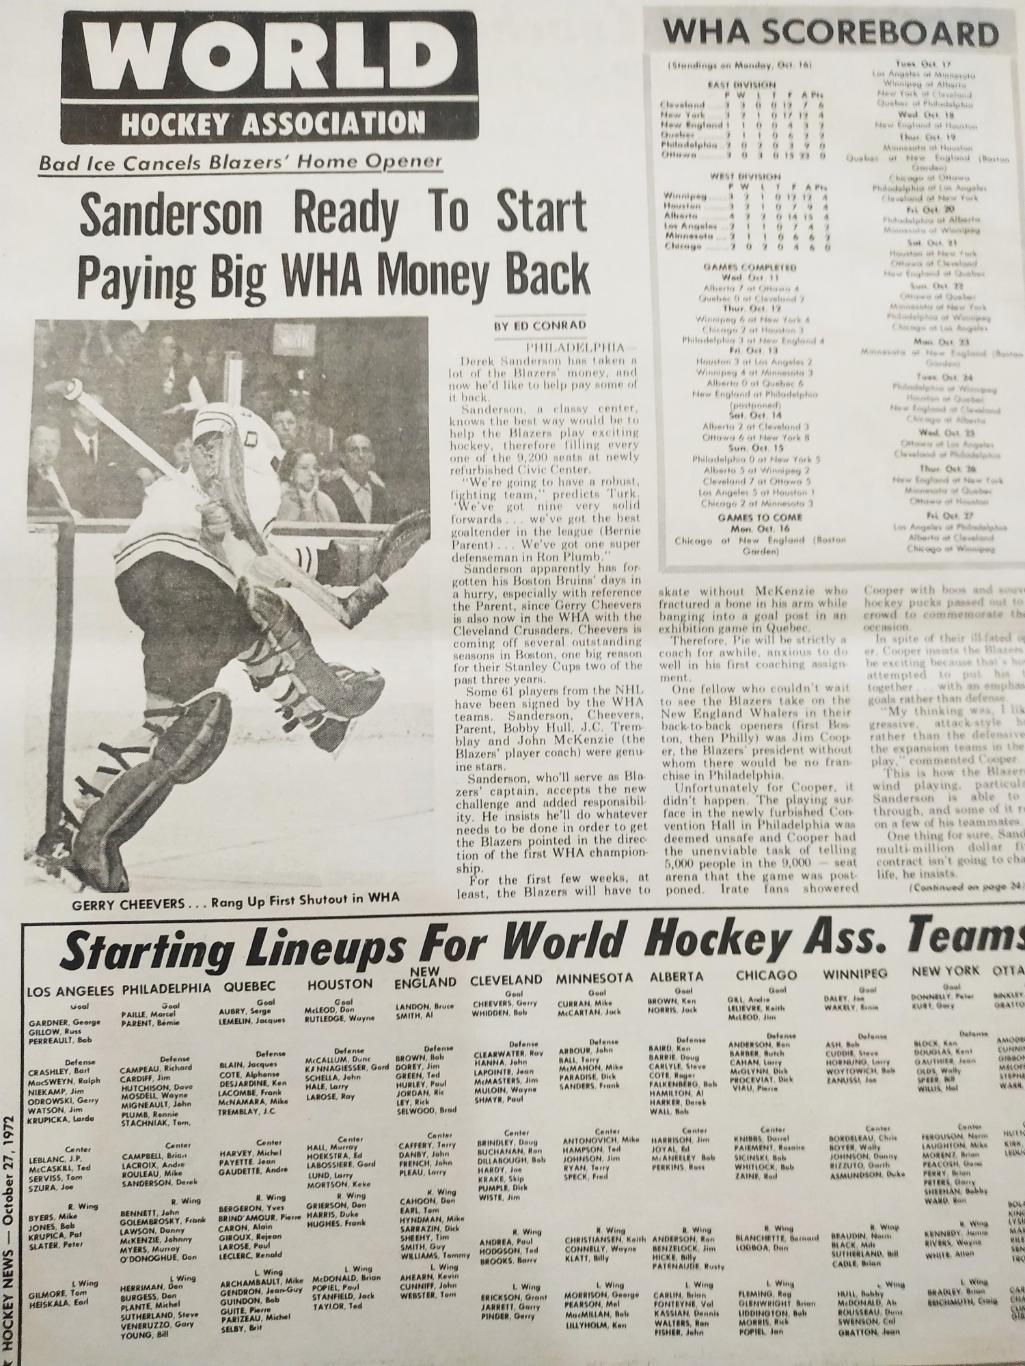 ХОККЕЙ ЖУРНАЛ ЕЖЕНЕДЕЛЬНИК НХЛ НОВОСТИ ХОККЕЯ OCT.27 1972 NHL THE HOCKEY NEWS 6